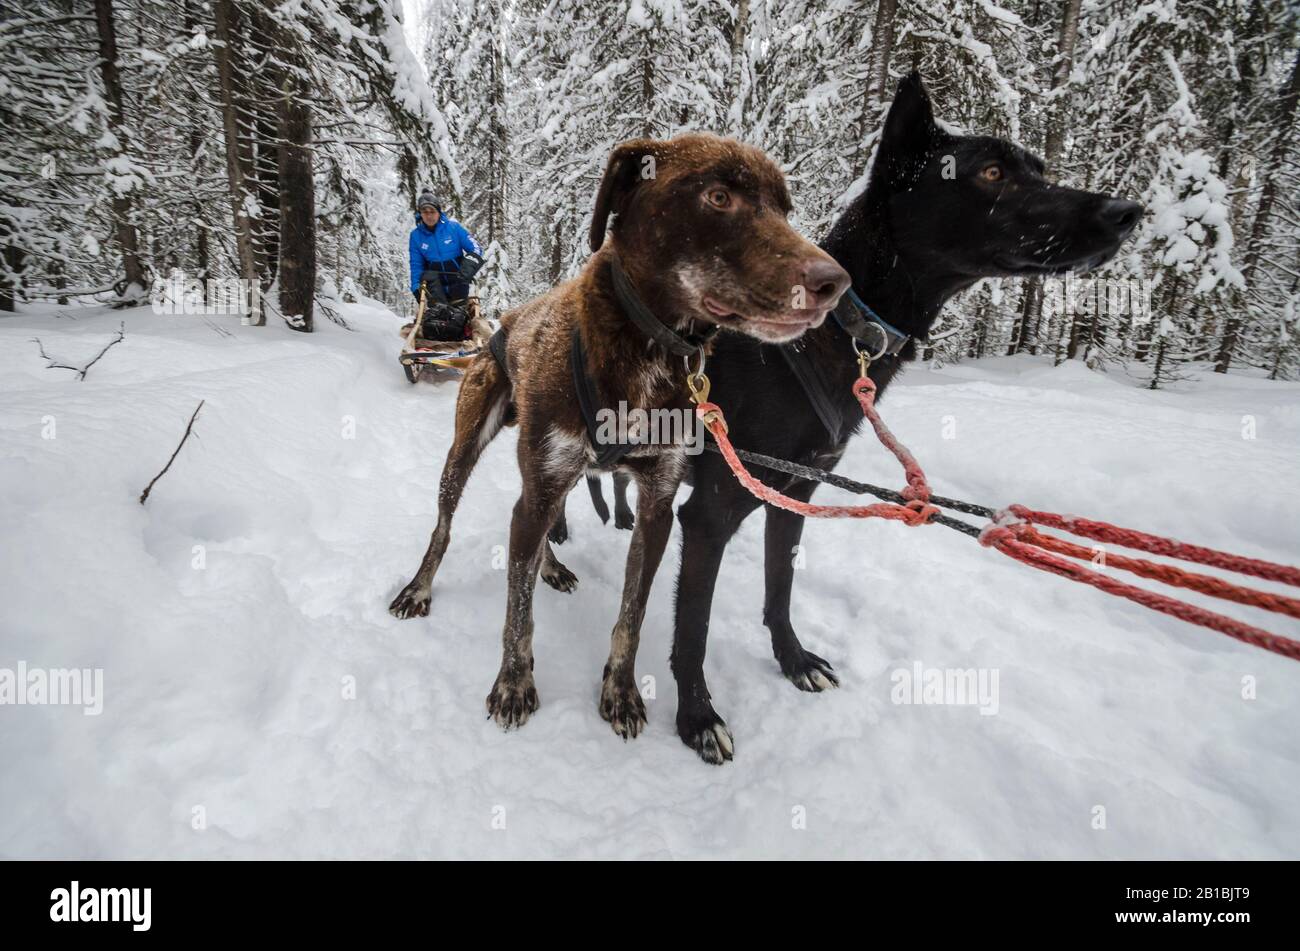 Febbraio 2020 - Factory Village. Cane squadra con cani divertenti. Russia, regione di Arkhangelsk Foto Stock